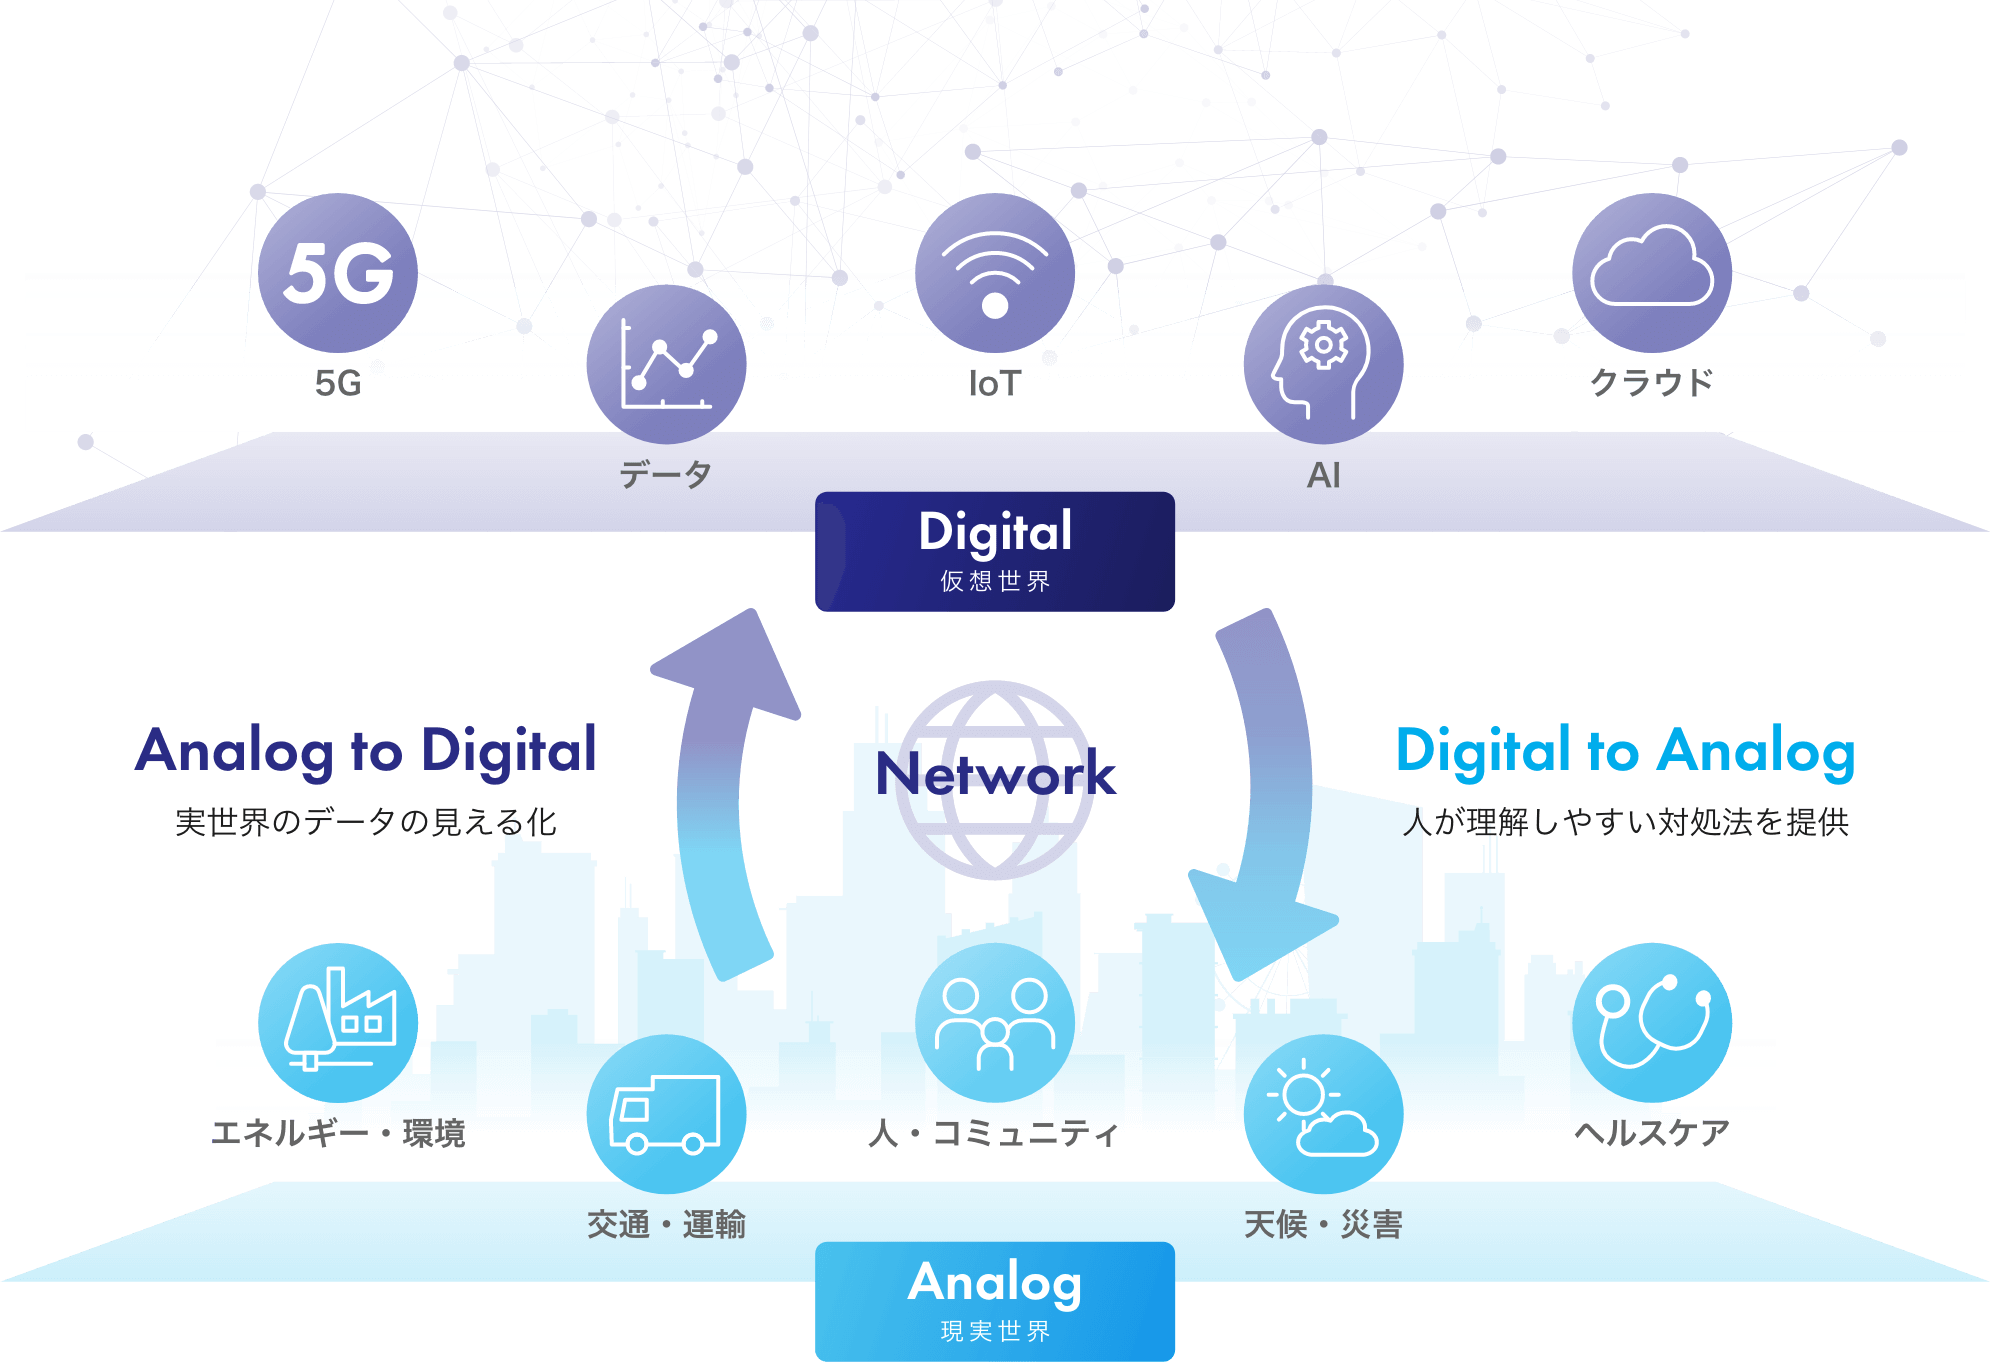 5G データ IoT AI クラウド Digital 仮想世界 Analog to Digital 実世界のデータの見える化 Network Digital to Analog 人が理解しやすい対処法を提供 エネルギー・環境 交通・運輸 人・コミュニティ 天候・災害 ヘルスケア Analog 現実世界